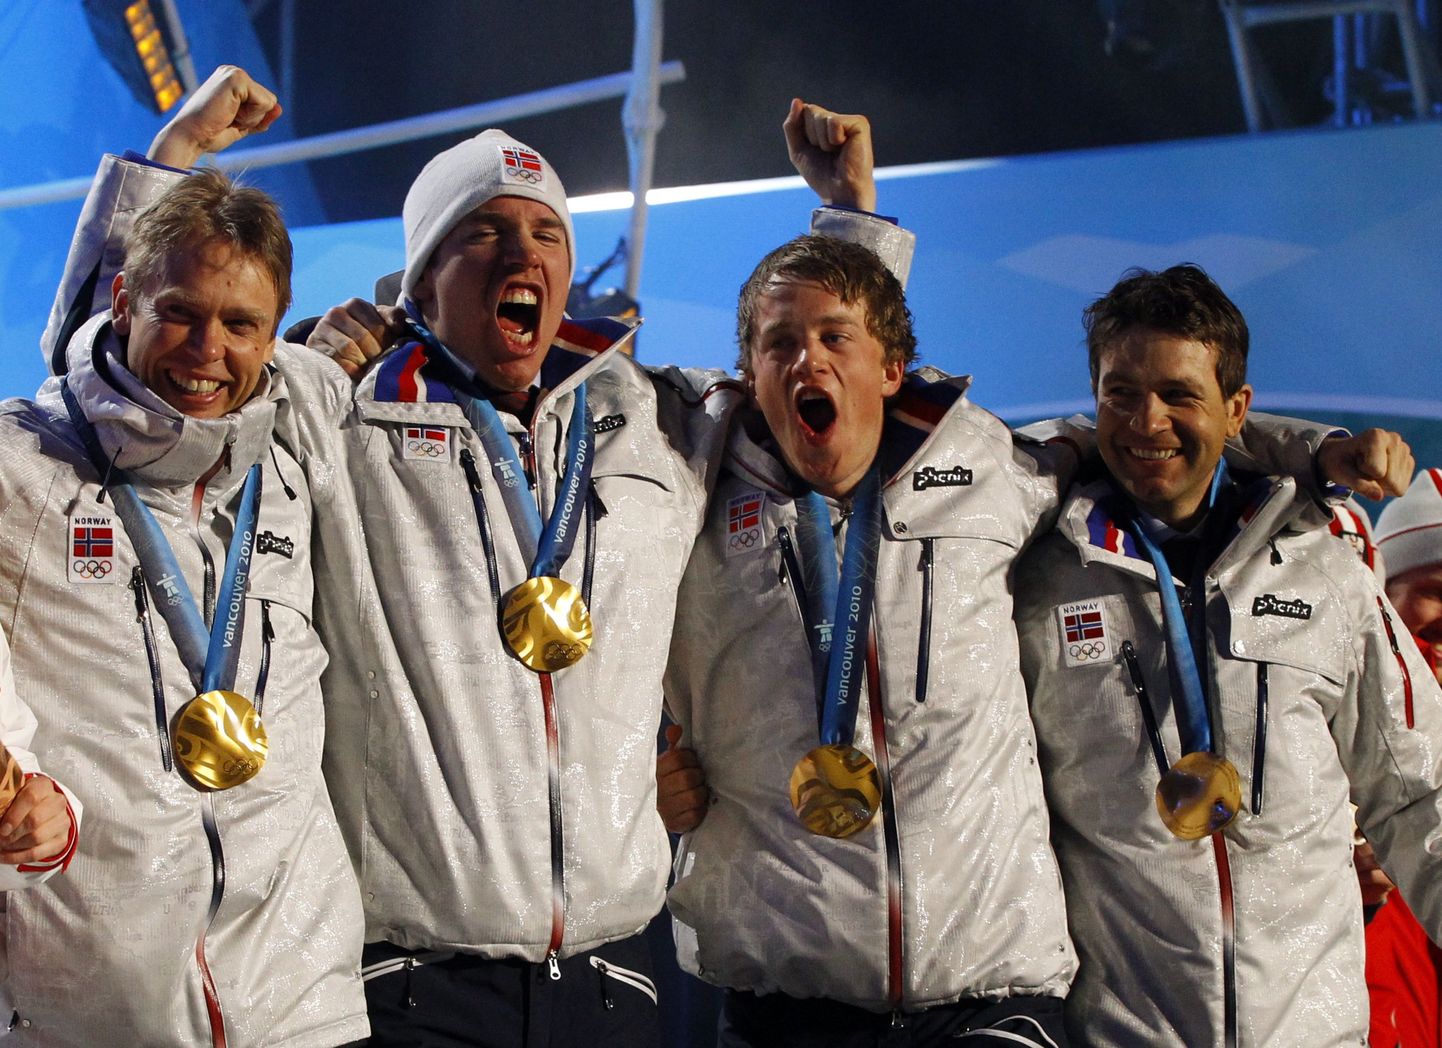 Olümpiavõitjad (vasakult) Halvard Hanevold, Emil Hegle Svendsen, Tarjei Bø ja Ole Einar Bjørndalen.